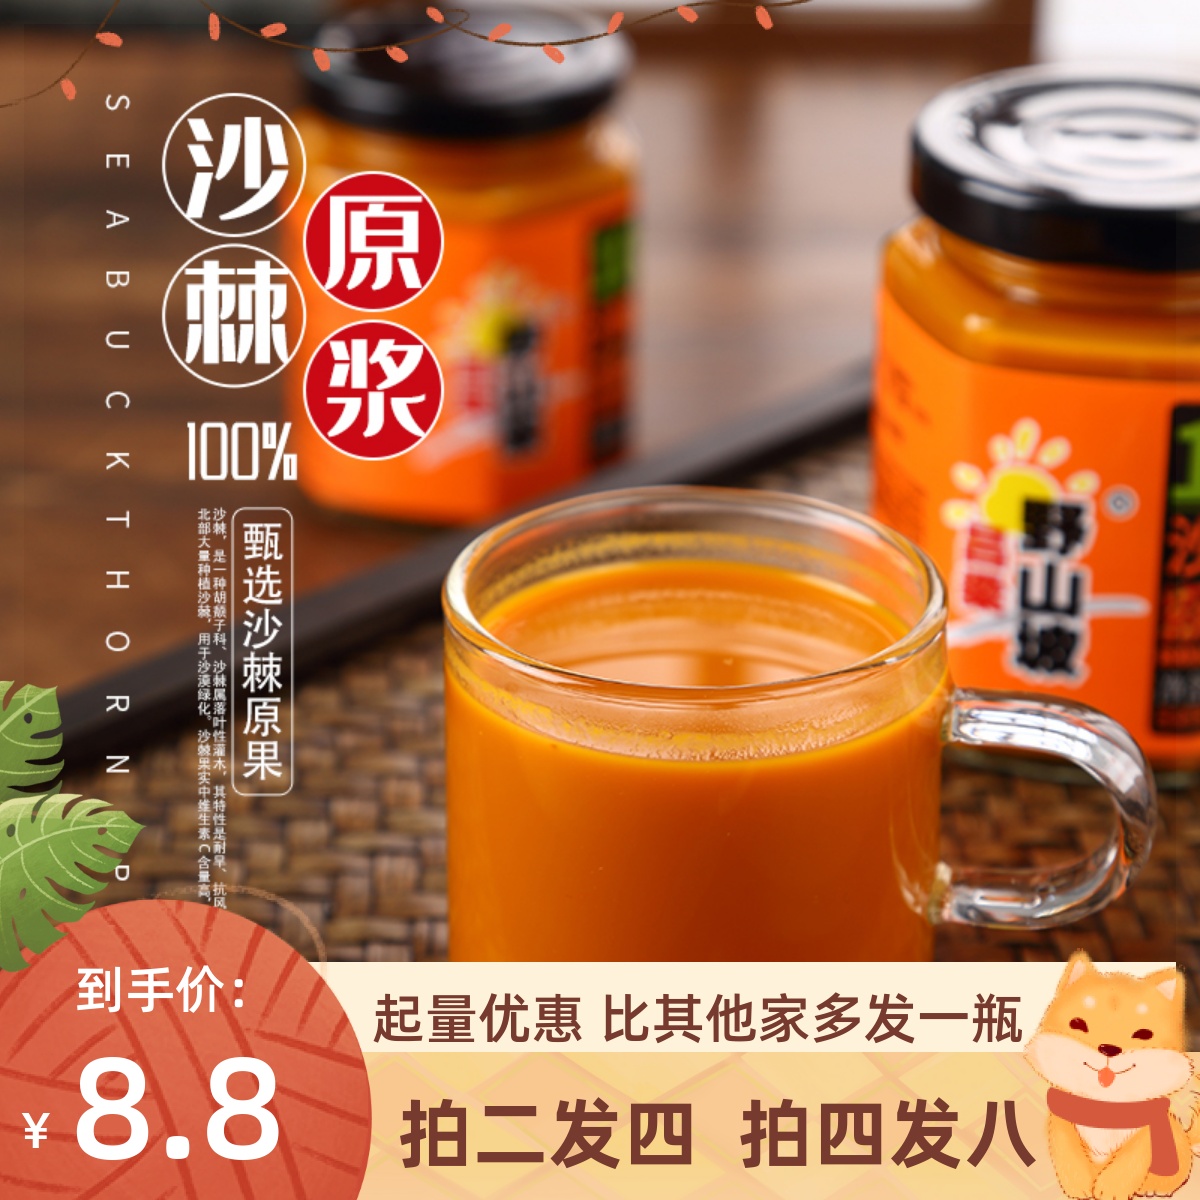 咖姆昂生榨椰汁生椰拿铁椰汁菠萝味味椰汁植物蛋白饮料180ml*5包-Taobao